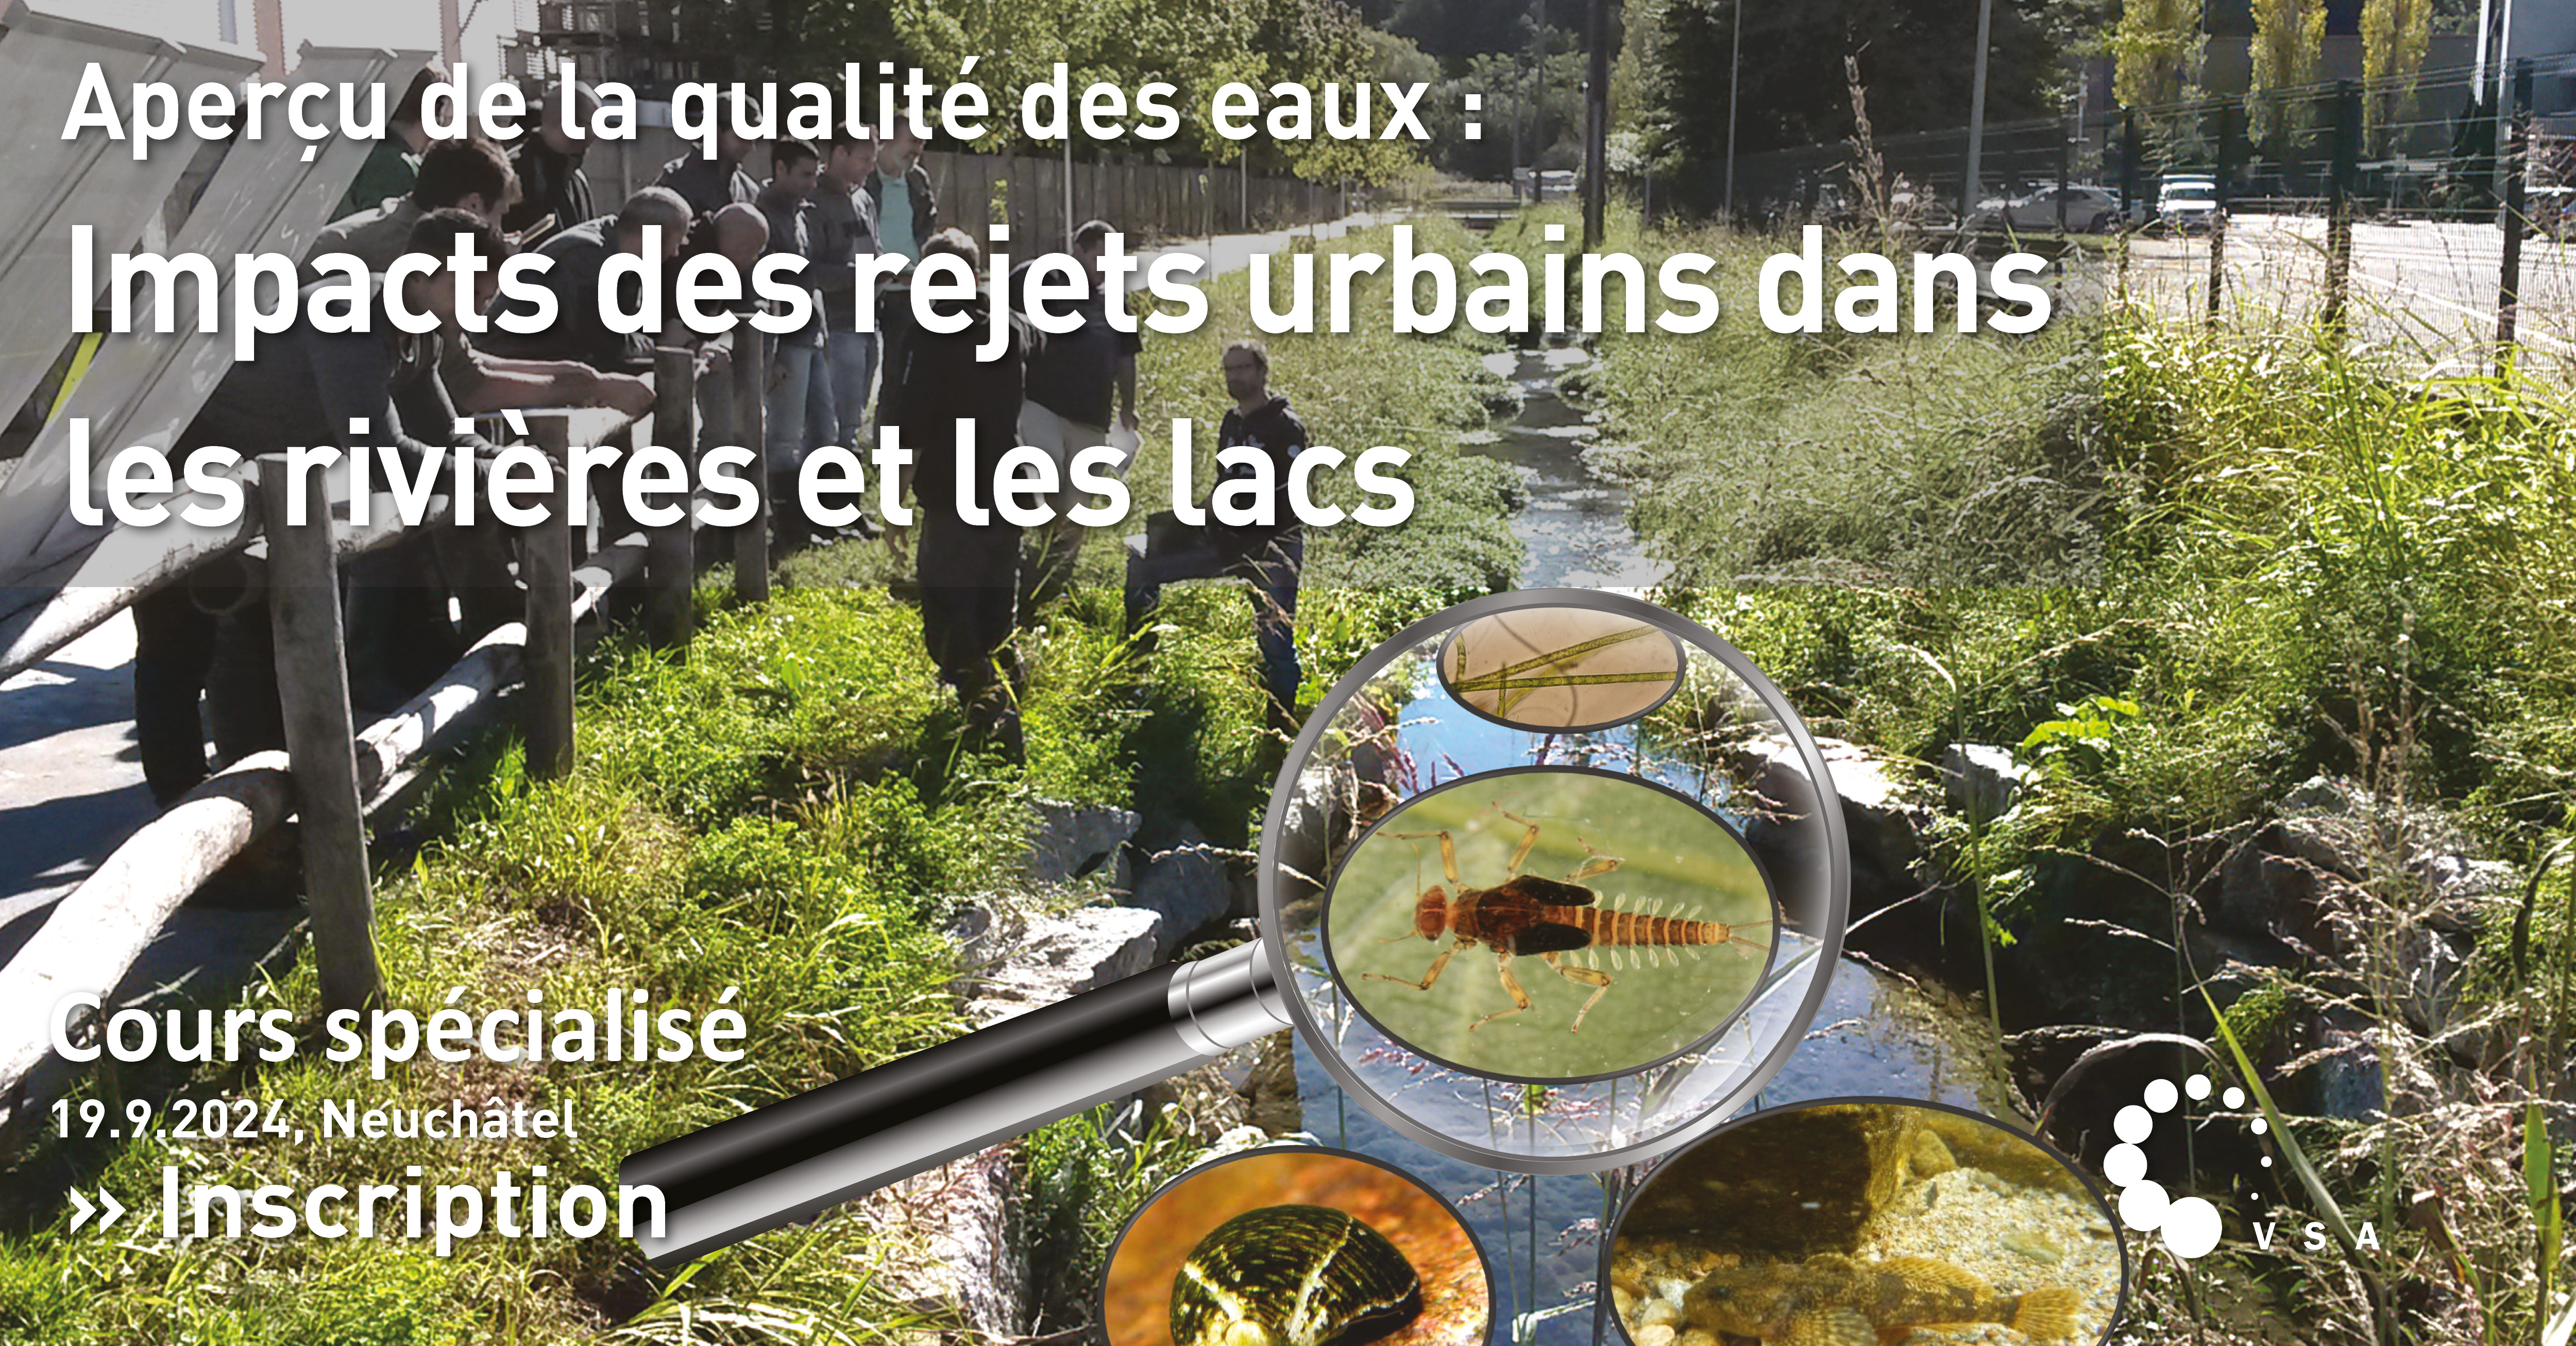 Aperçu de la qualité des eaux : impacts des rejets urbains dans les rivières et les lacs